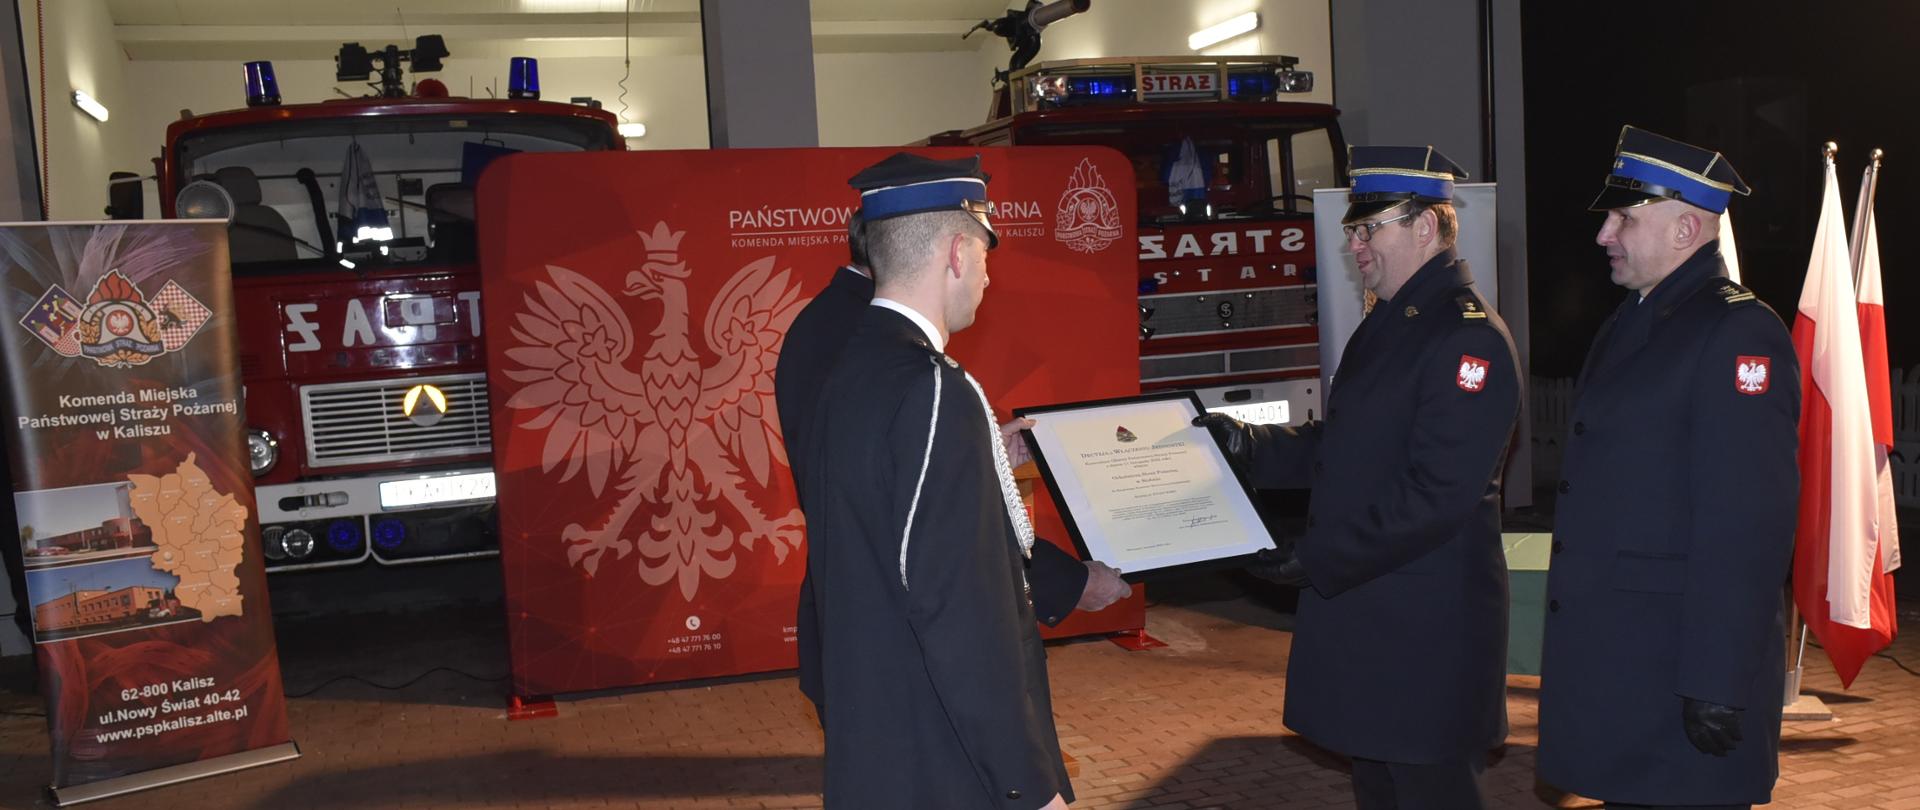 dwóch strażaków wręcza innym strażakom ramkę z dokumentem , w tle samochody strażackie i duża tekstylna ścianka z orłem